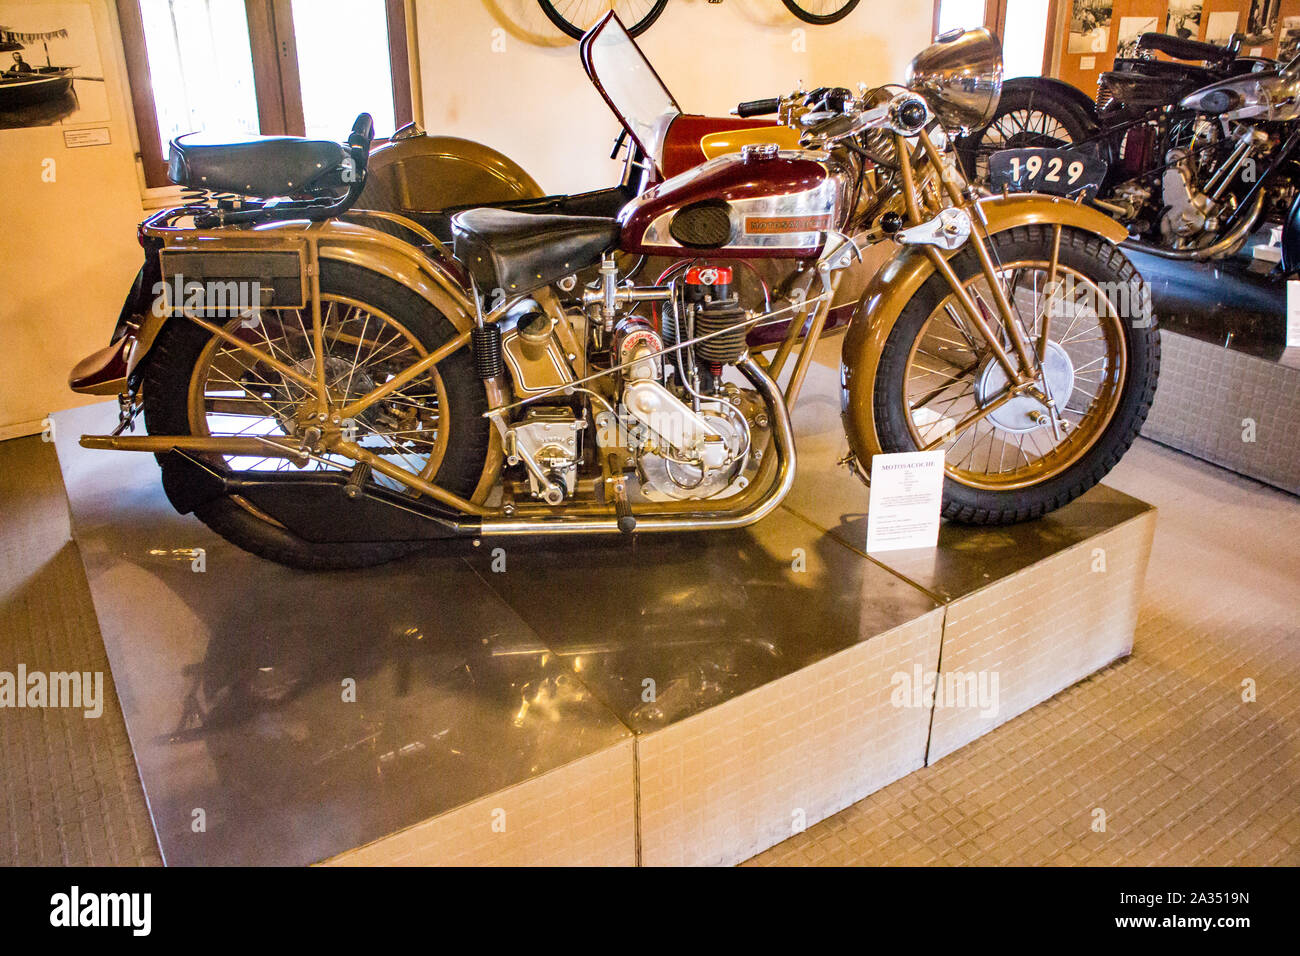 Musée de la Moto à Marseille (France) Motobike Museum in Marseilles : Motosacoche 1929 (Swiss) Stock Photo